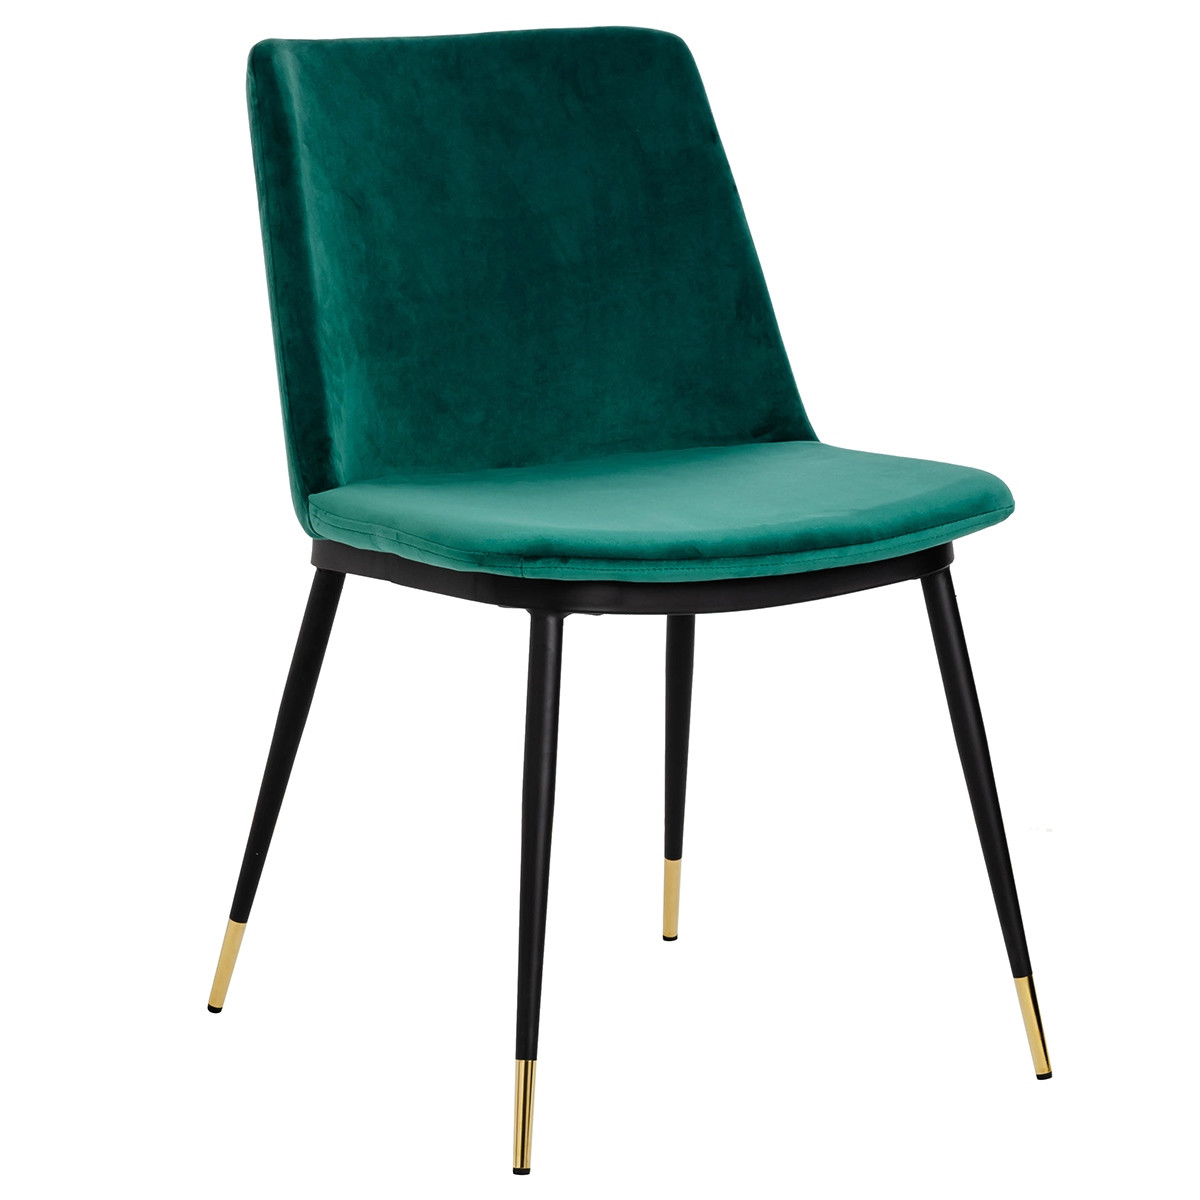 12 najlepszych krzeseł zielonych do salonu